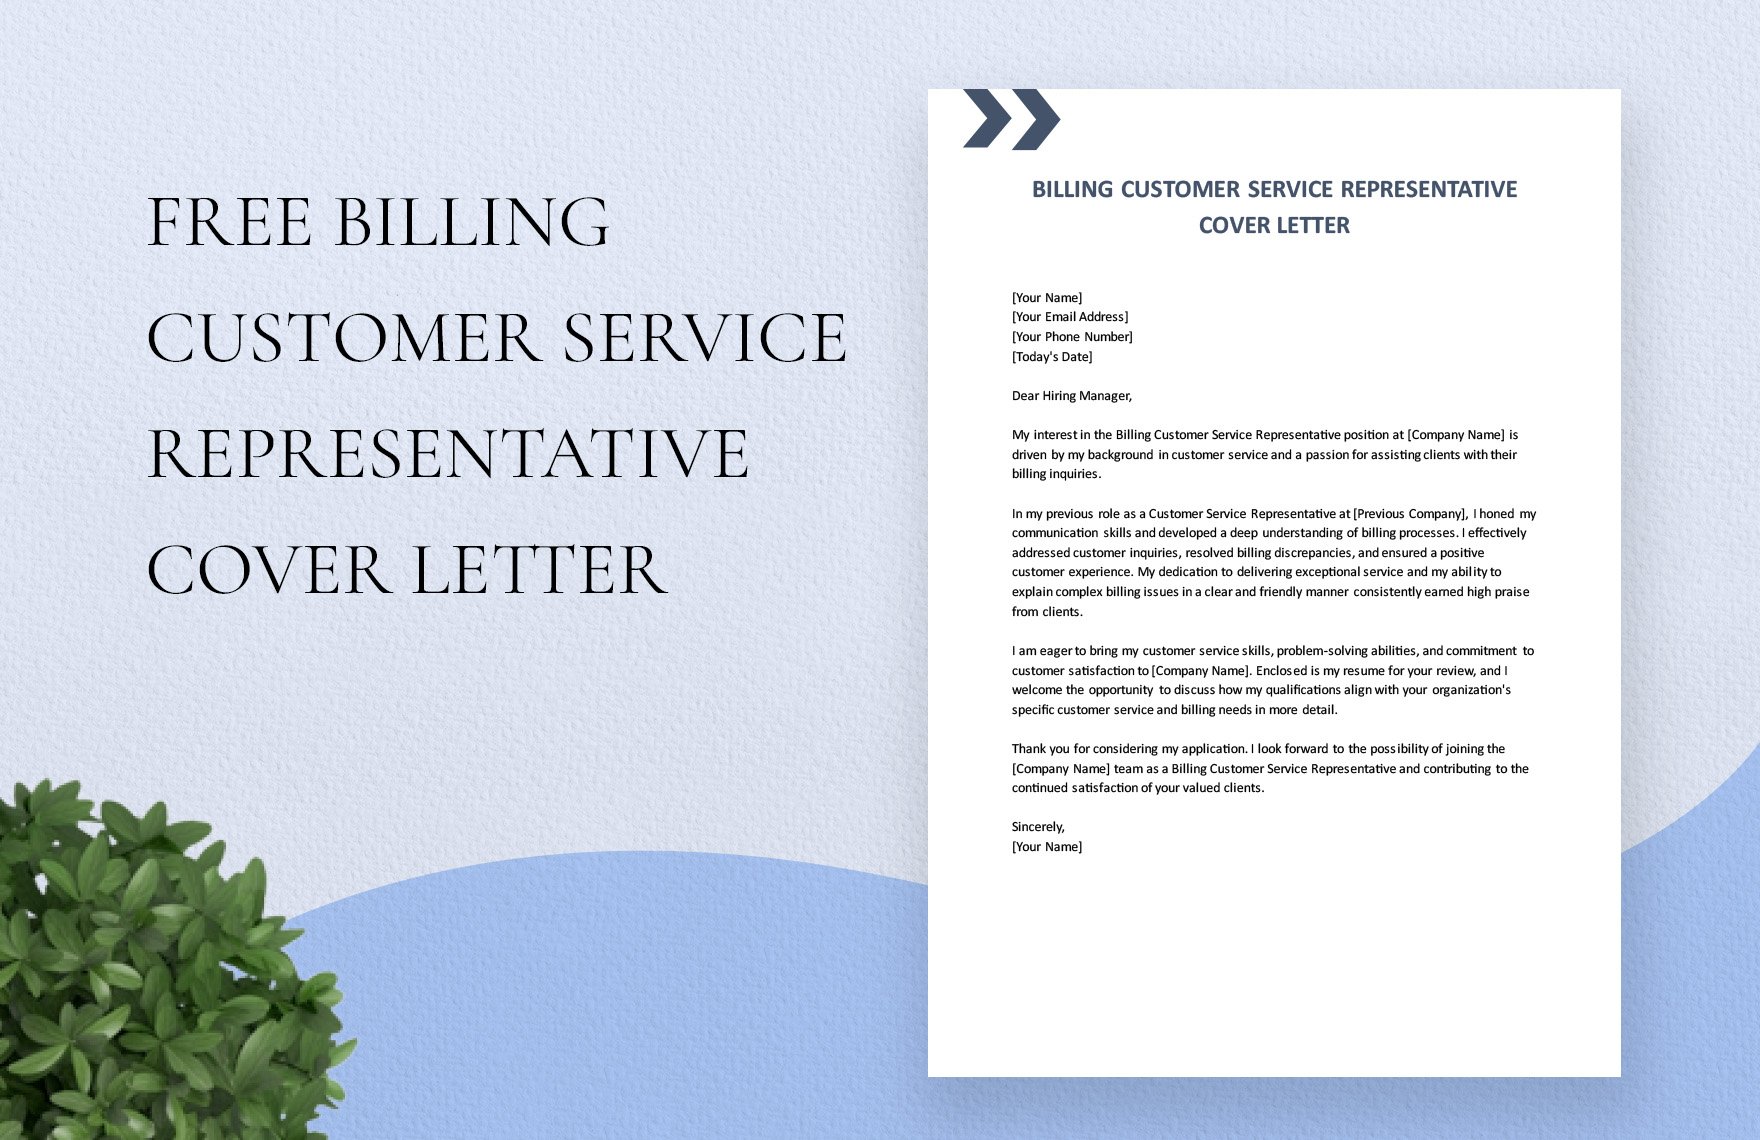 Billing Customer Service Representative Cover Letter